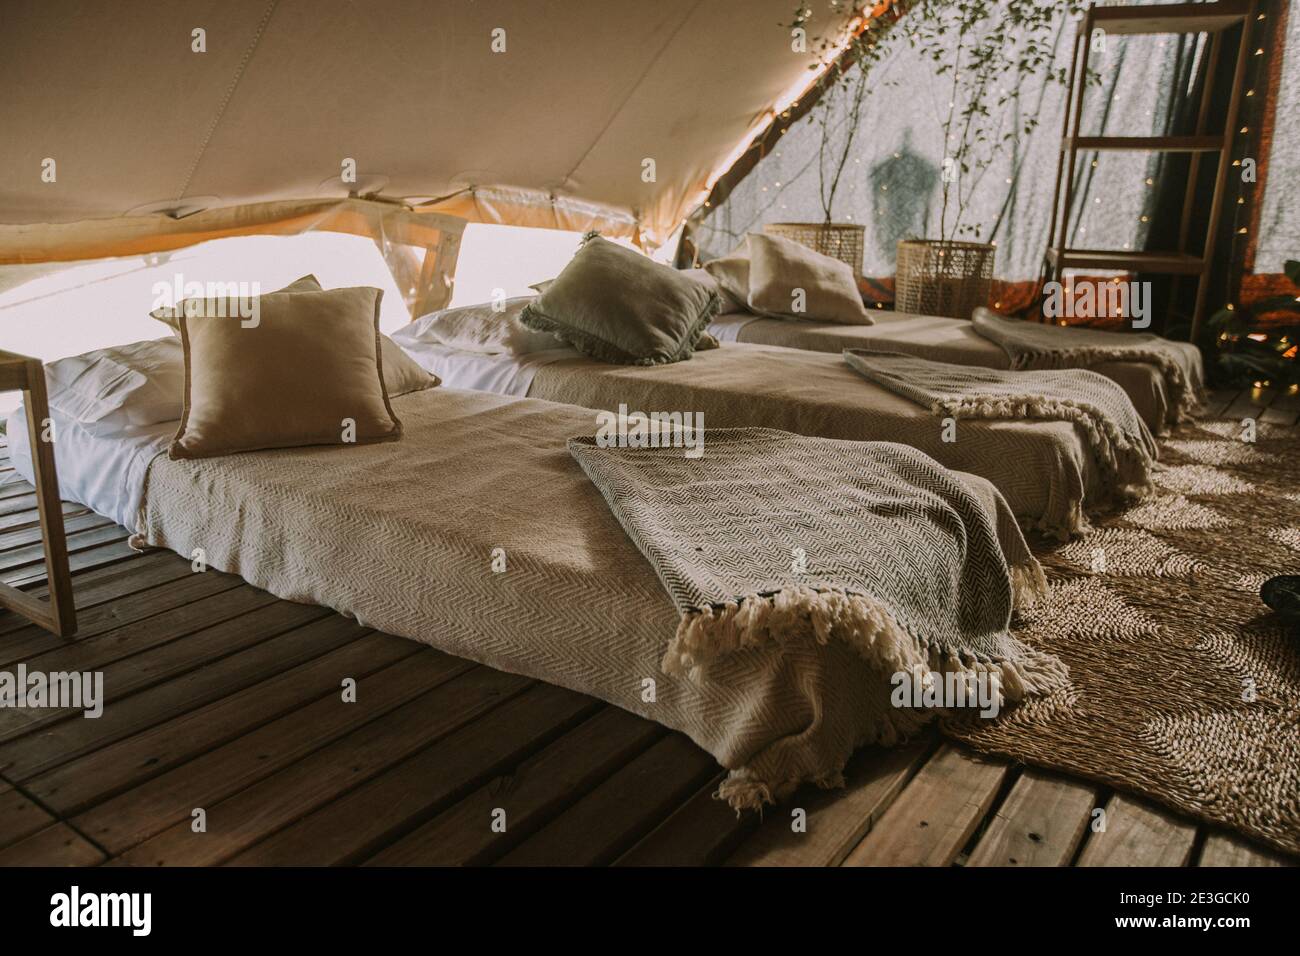 Tenda con 3 materassi, cuscini, tavolo in legno, fiori e luci di fondo. Foto Stock